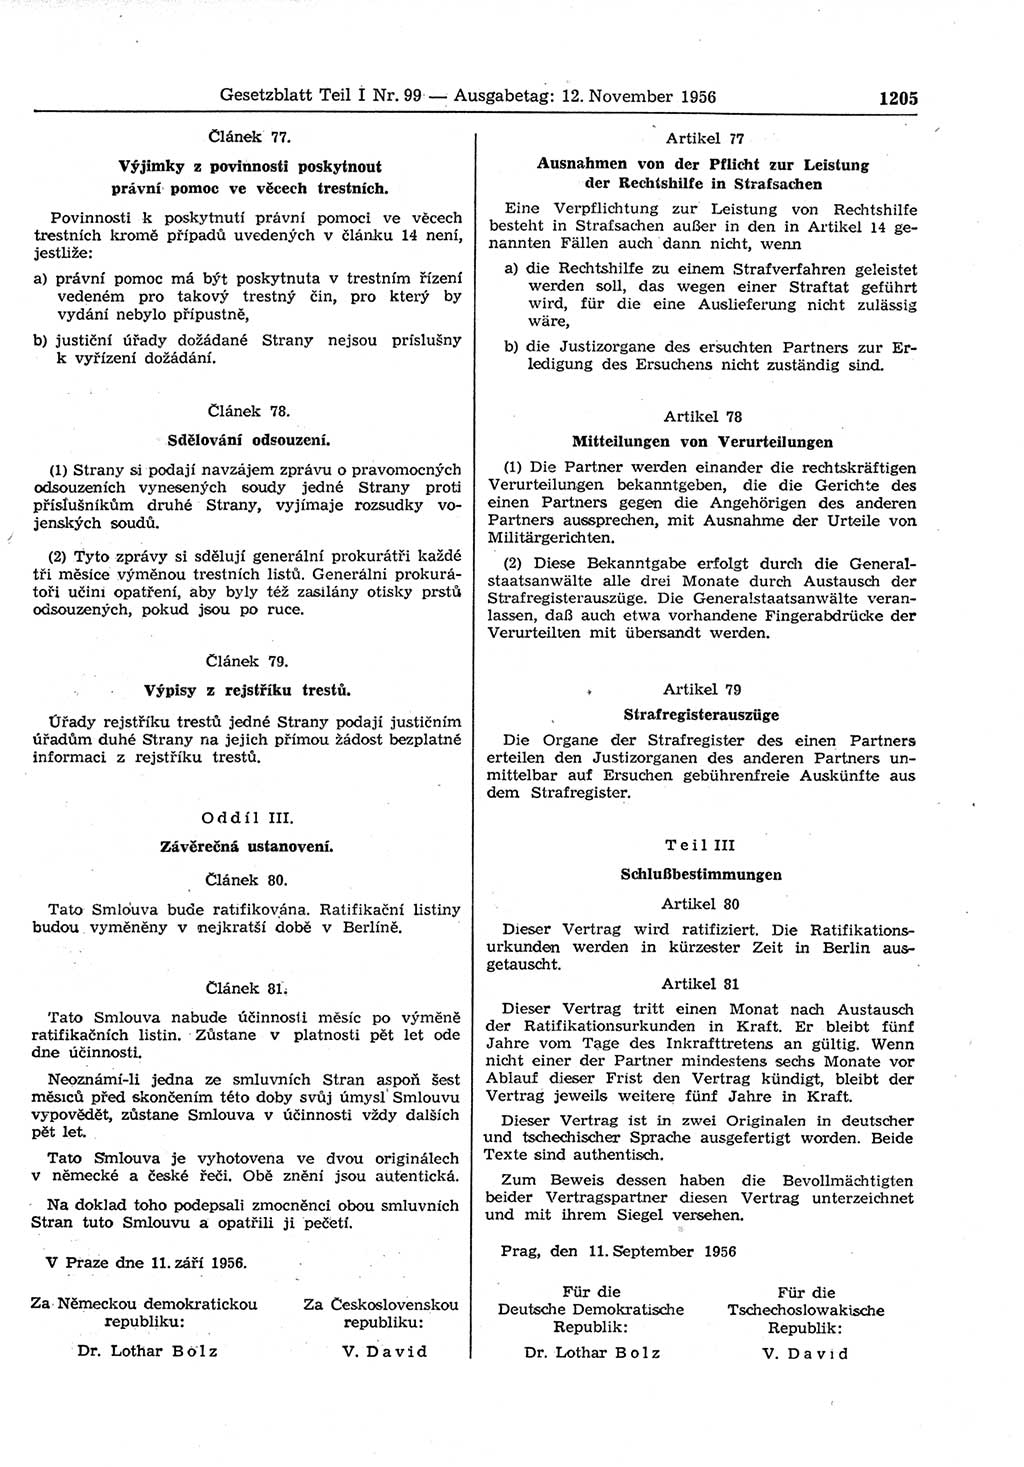 Gesetzblatt (GBl.) der Deutschen Demokratischen Republik (DDR) Teil Ⅰ 1956, Seite 1205 (GBl. DDR Ⅰ 1956, S. 1205)